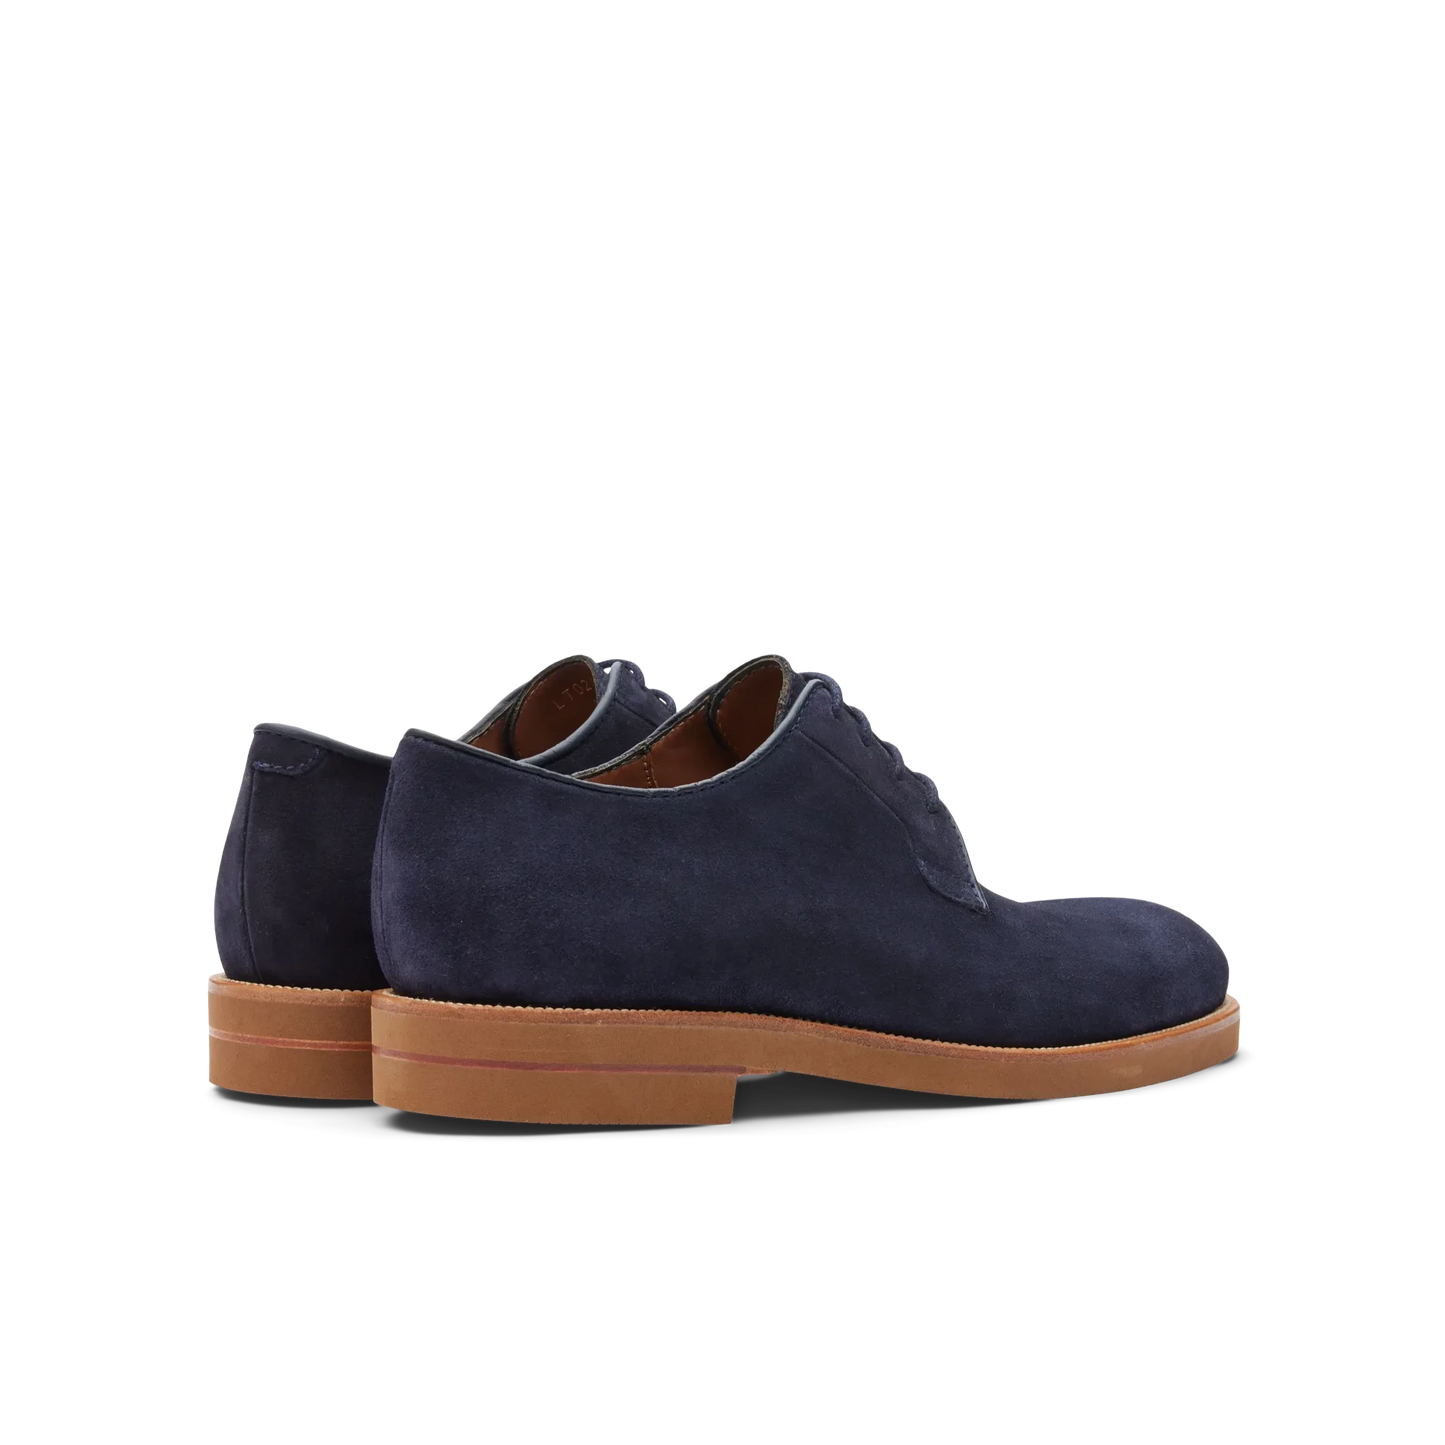 Zapatos Oxford De La Marca Lottusse Para Hombre Modelo Camoscio Marino En Color Azul